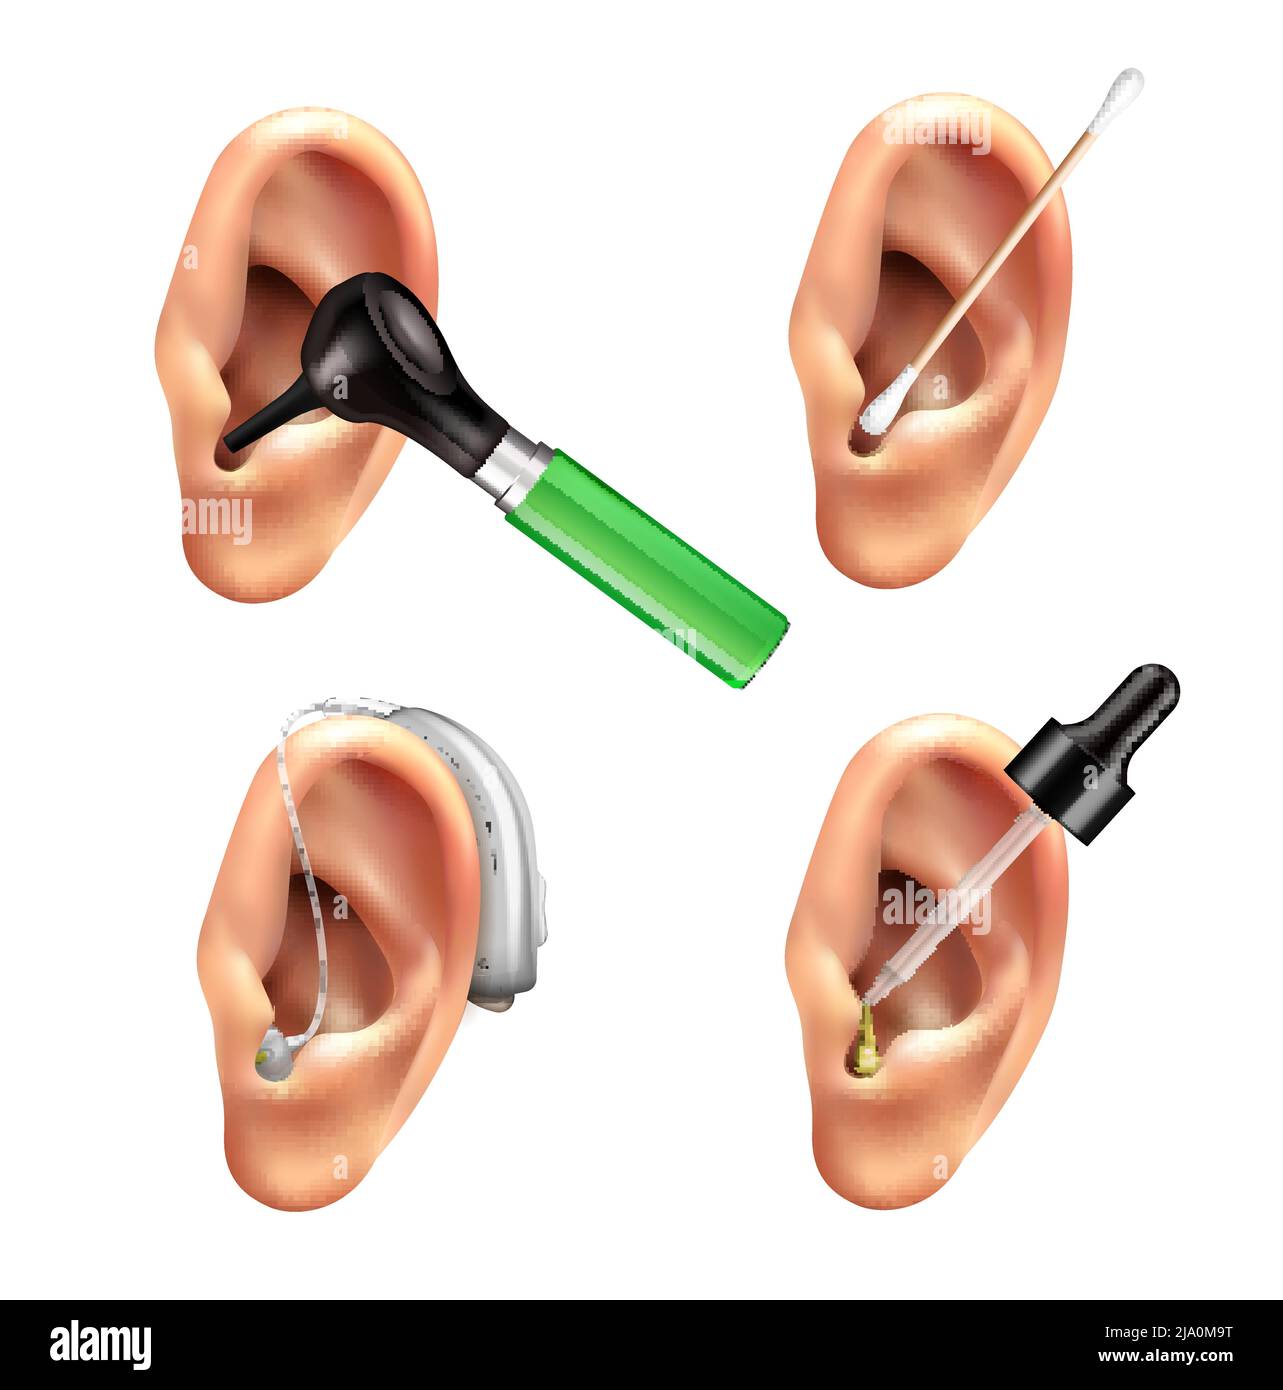 Apparecchi acustici Ear Care Set realistico con immagini isolate di orecchie umane con gocce e bastoni illustrazione vettoriale Illustrazione Vettoriale